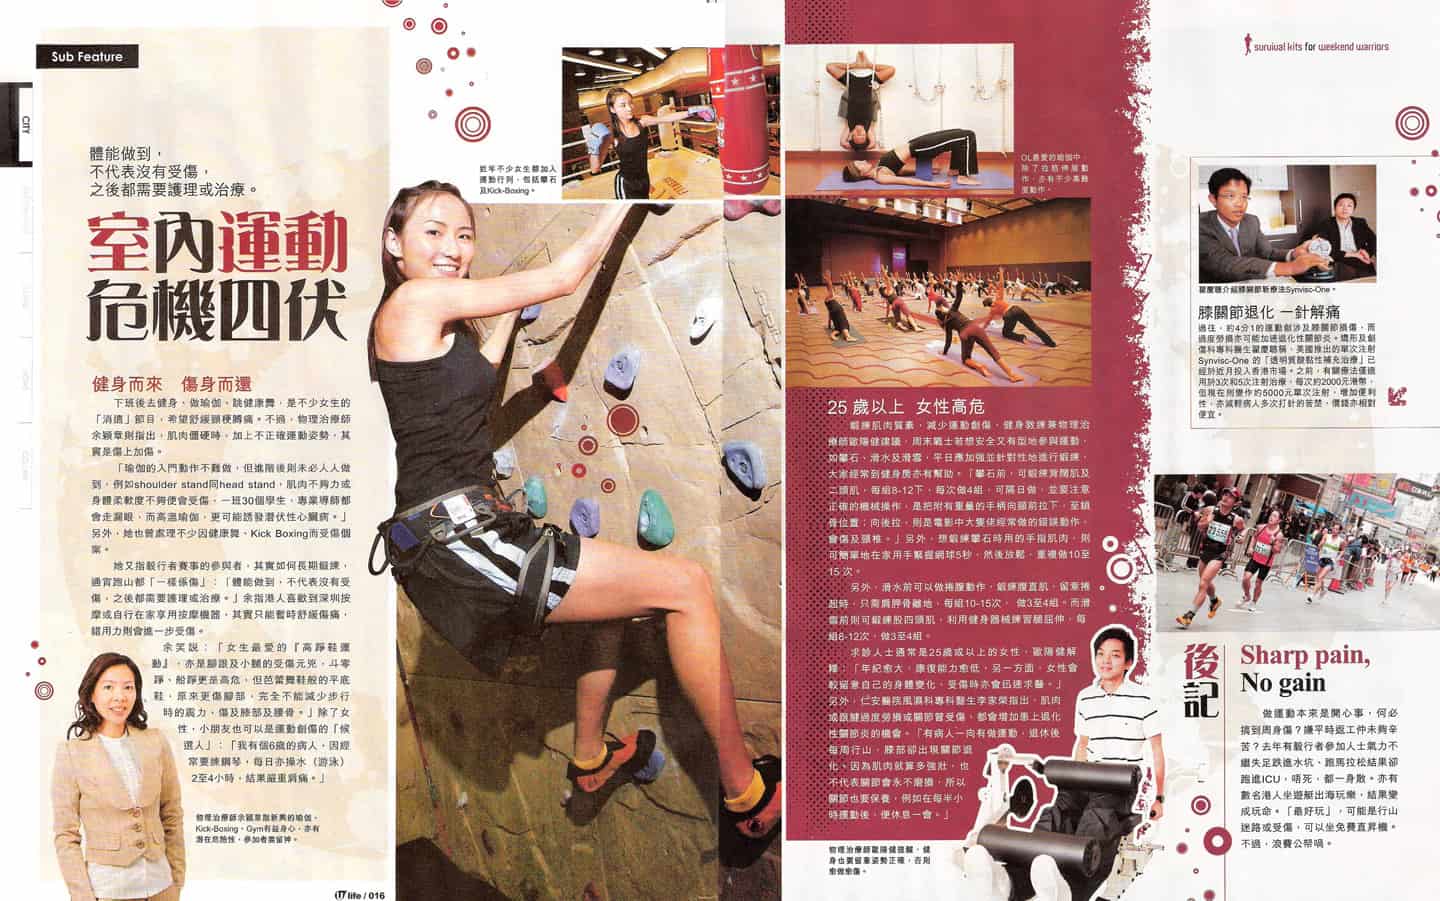 室內運動 危機四伏 (U-Magazine 30 Oct 2009)